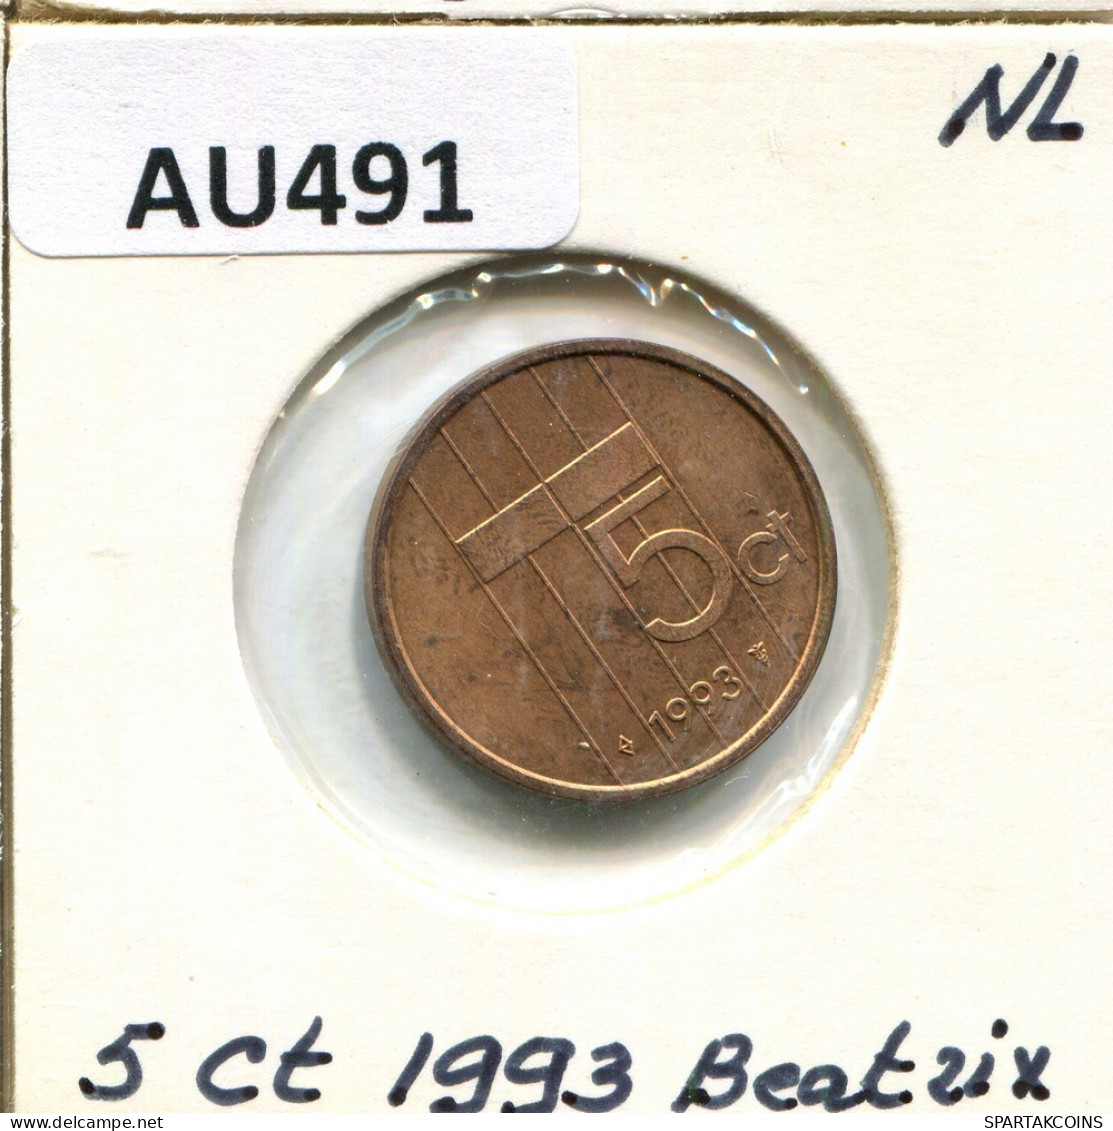 5 CENTS 1993 NÉERLANDAIS NETHERLANDS Pièce #AU491.F.A - 1980-2001 : Beatrix